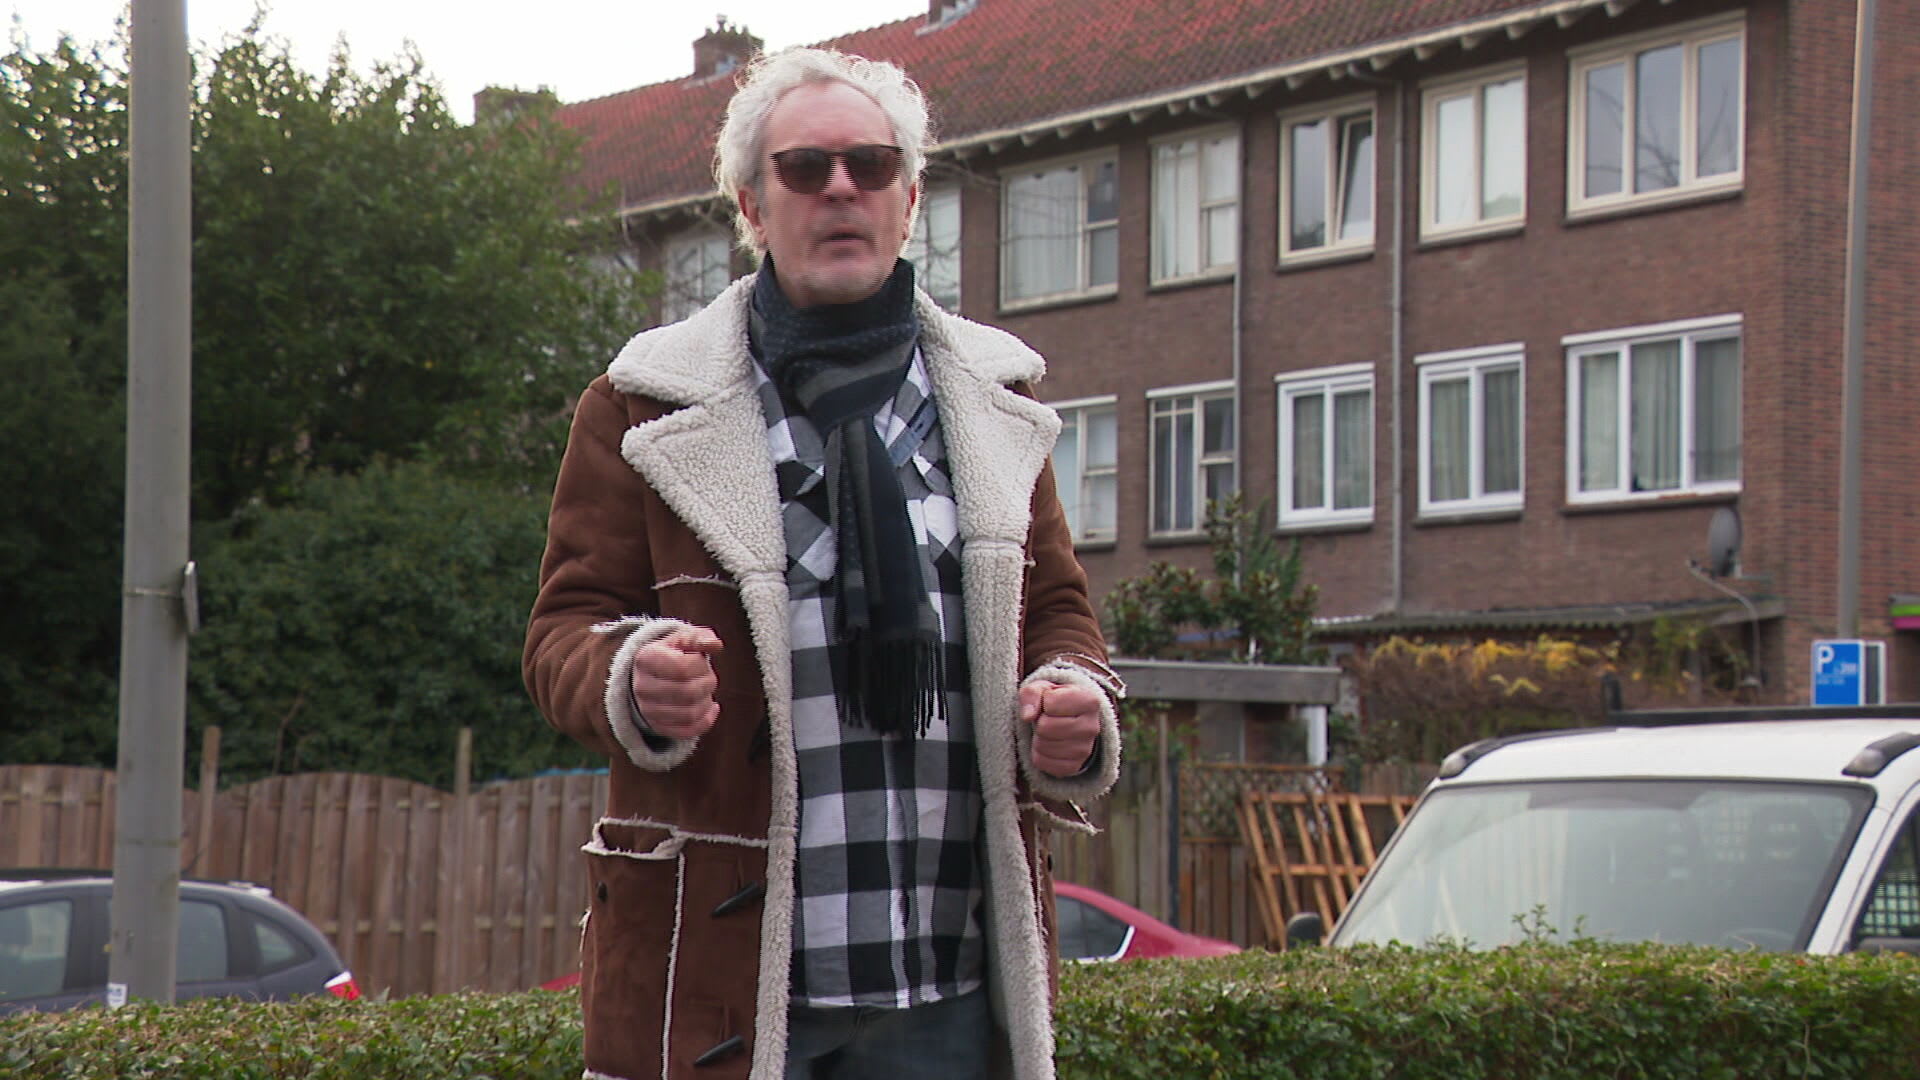 Bewoners Rotterdamse wijk Charlois boos om sloopplannen: 'Ze dragen me alleen tussen zes planken weg'